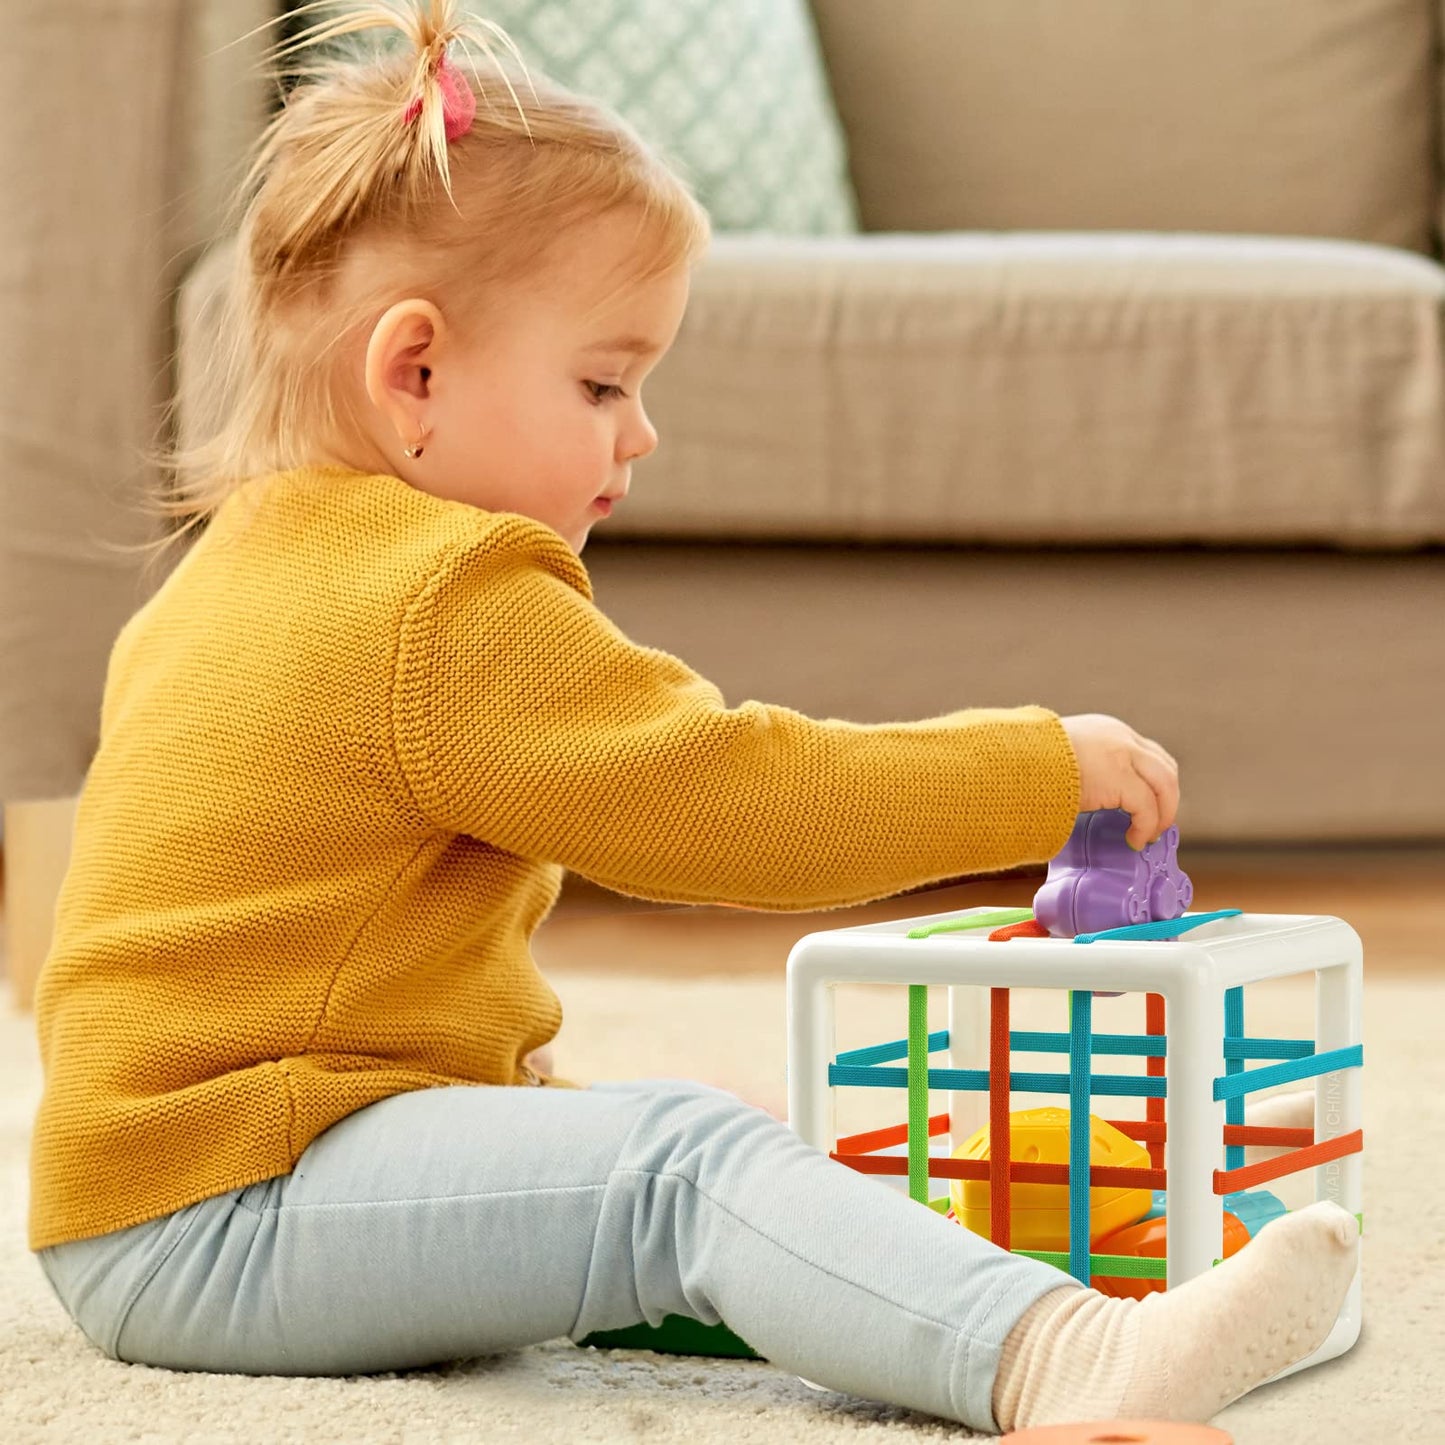 Montessori Shape Blocks